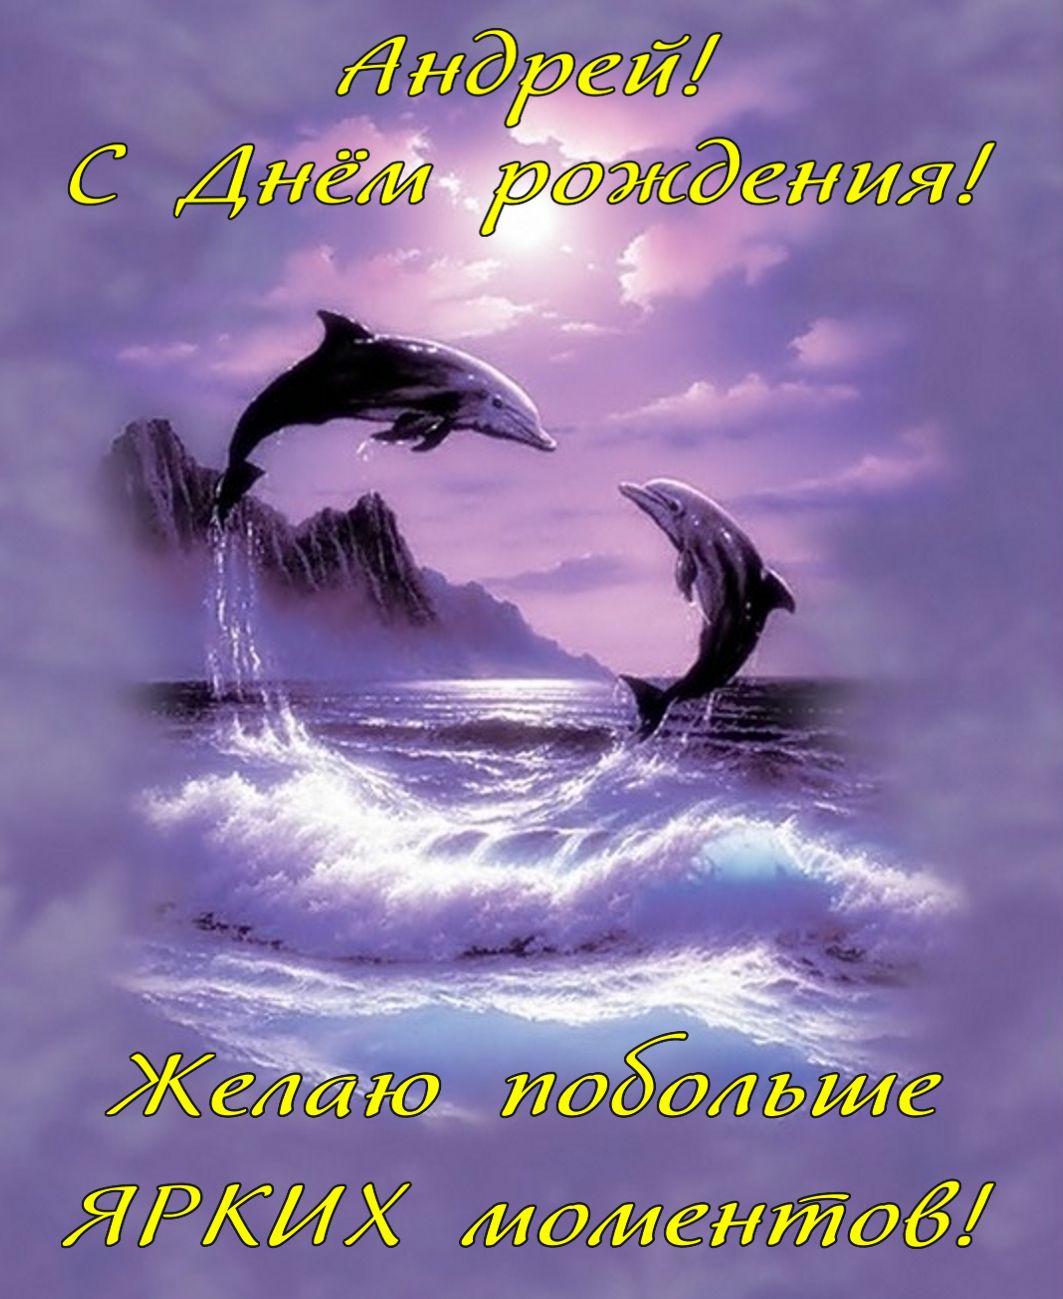 Открытка на День рождения Андрею - фантастические дельфины на красивом фоне